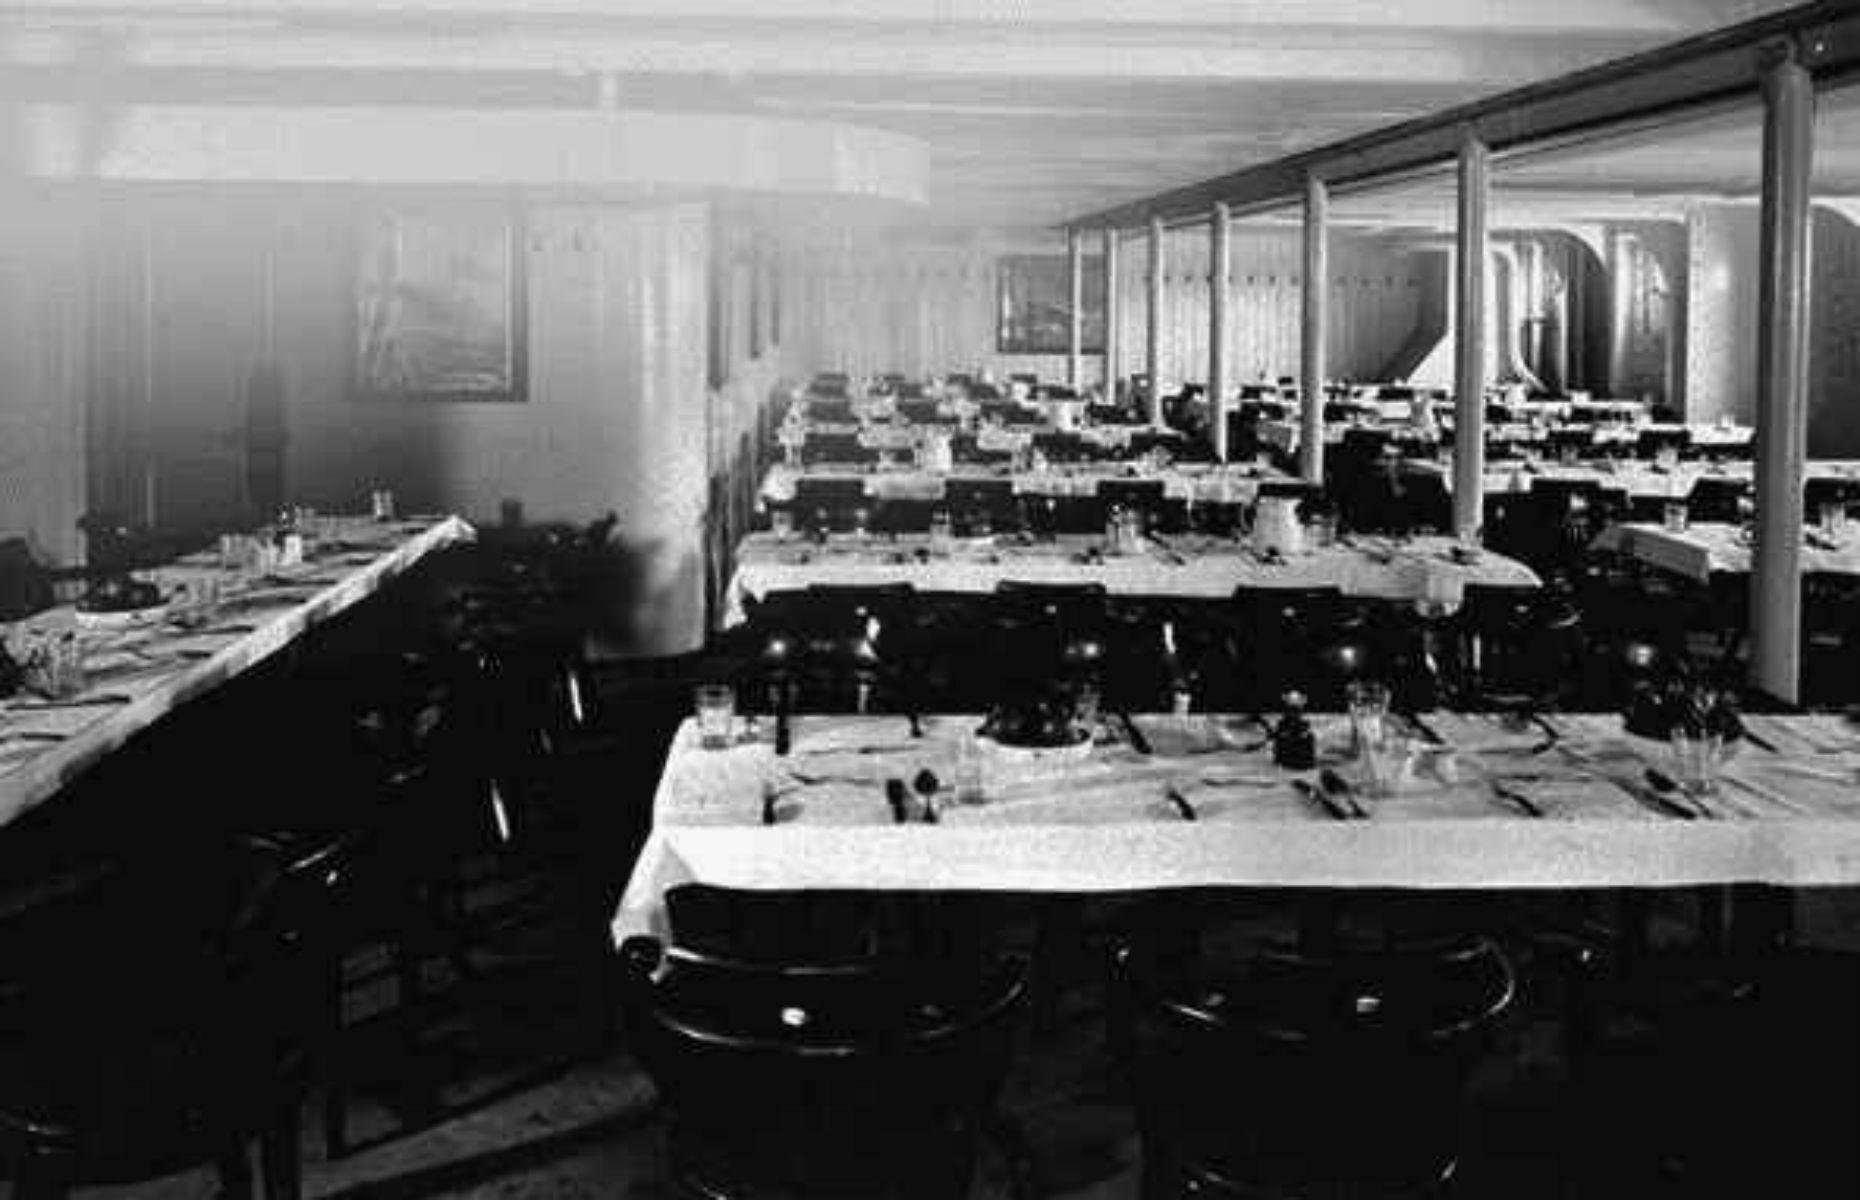 Steerage: dining room